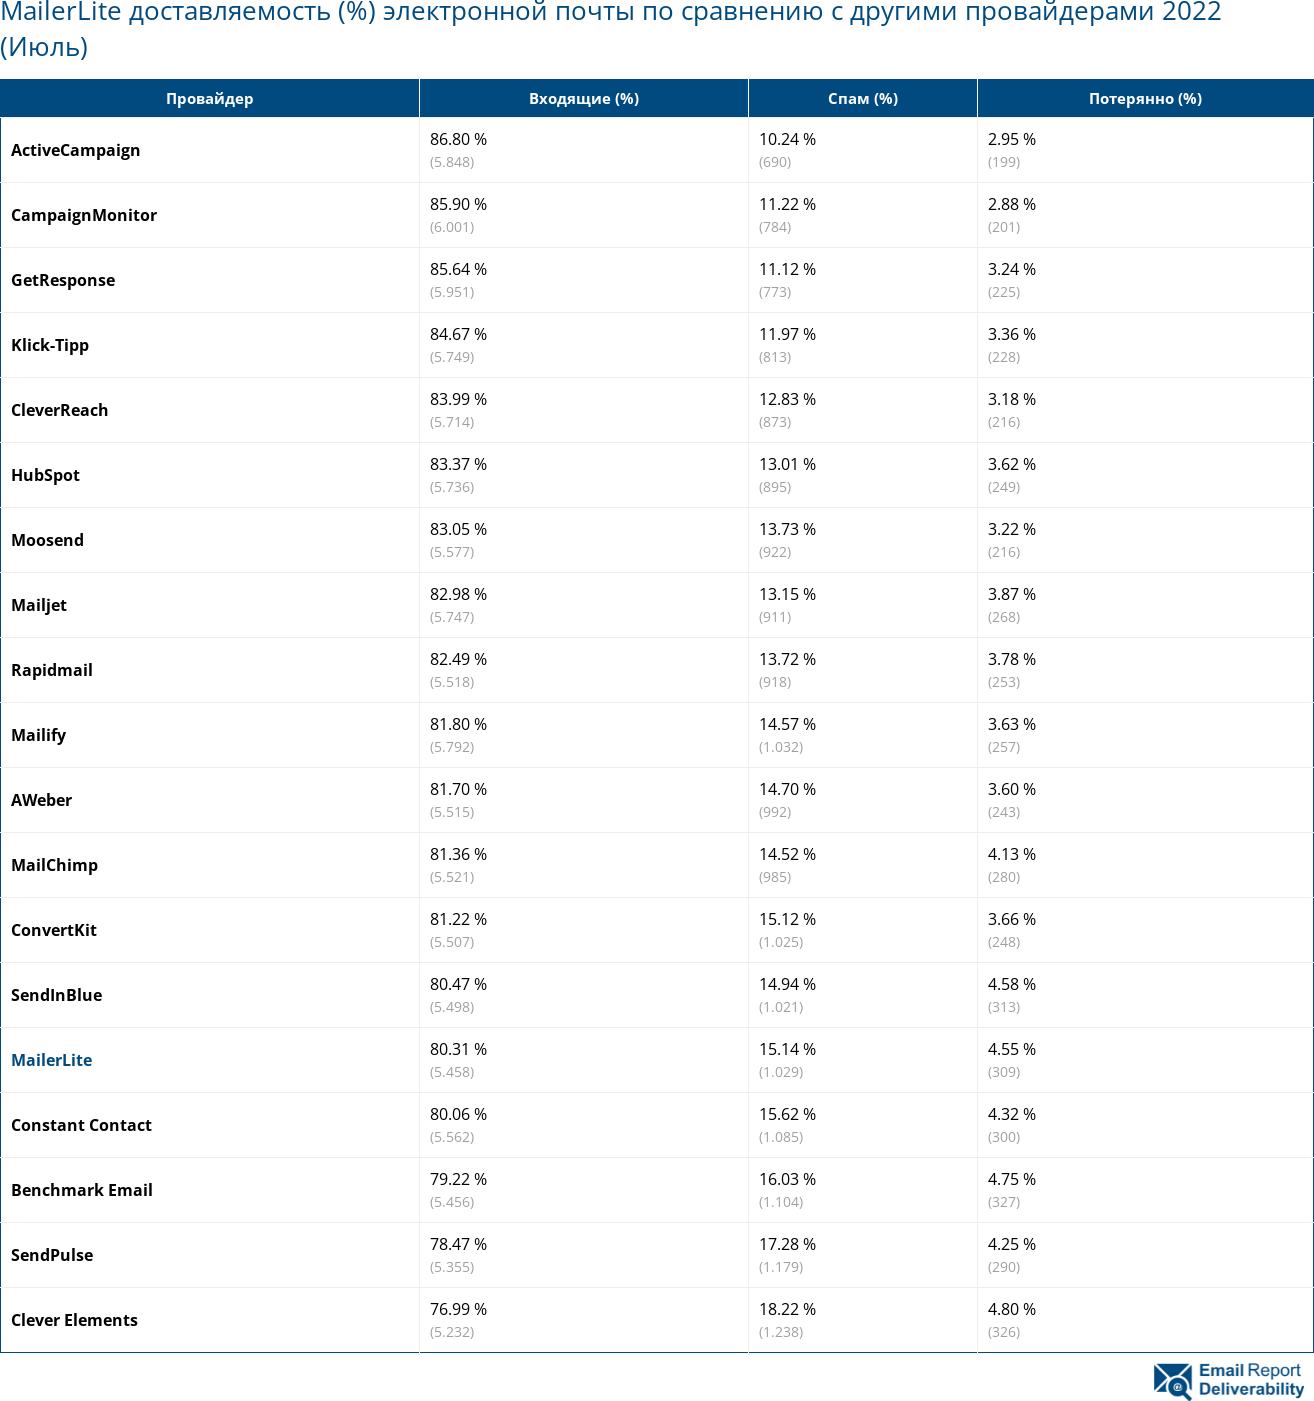 MailerLite доставляемость (%) электронной почты по сравнению с другими провайдерами 2022 (Июль)